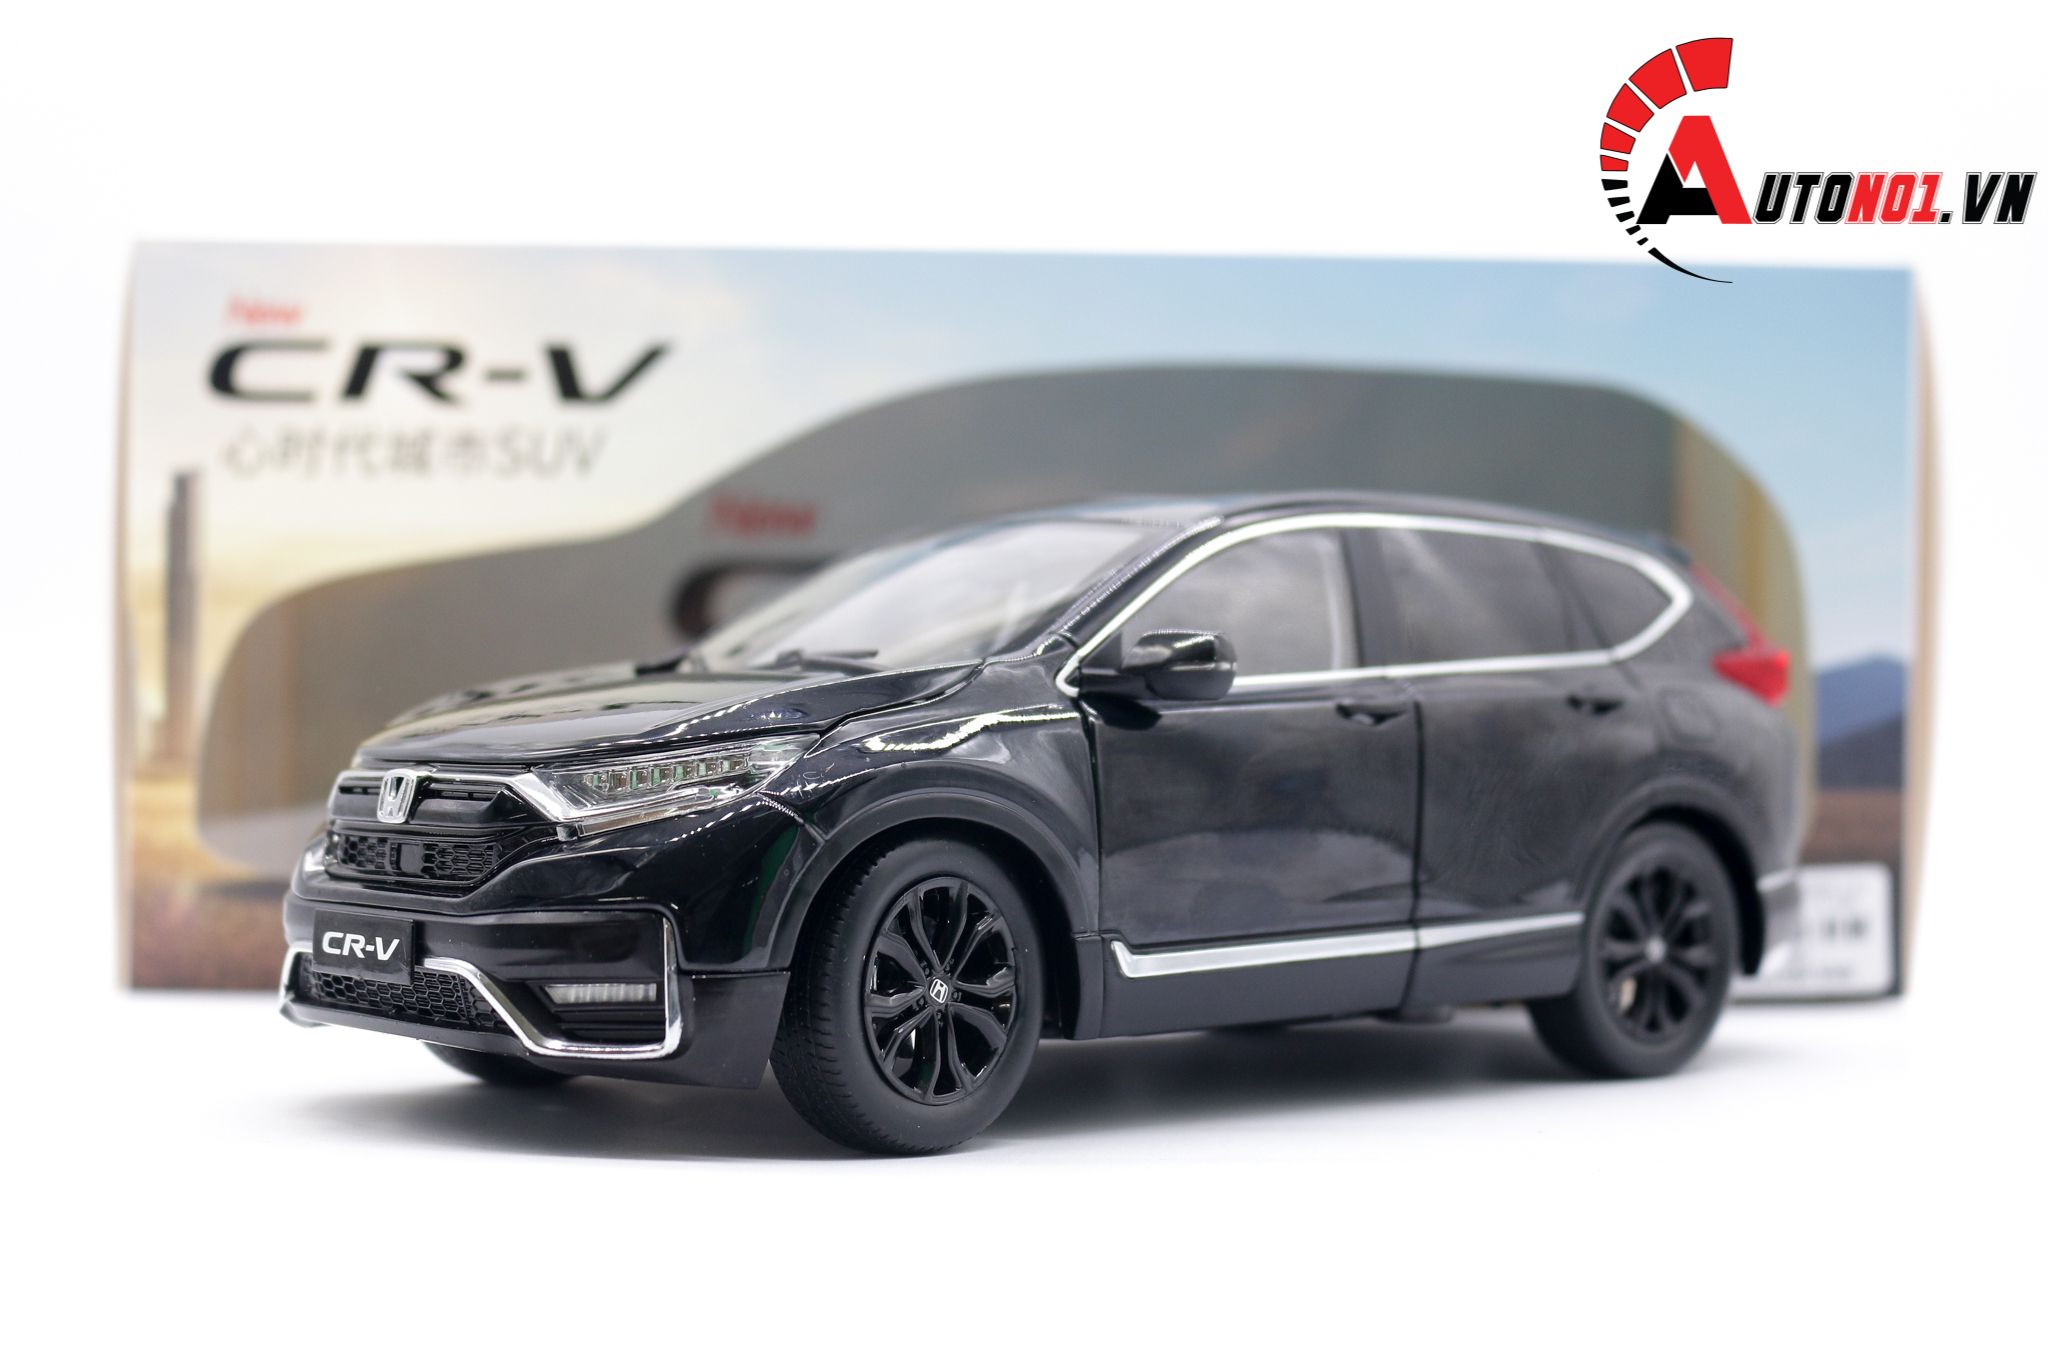 Giá xe Honda CRV 2021 hình ảnh thực tế đánh giá thông số